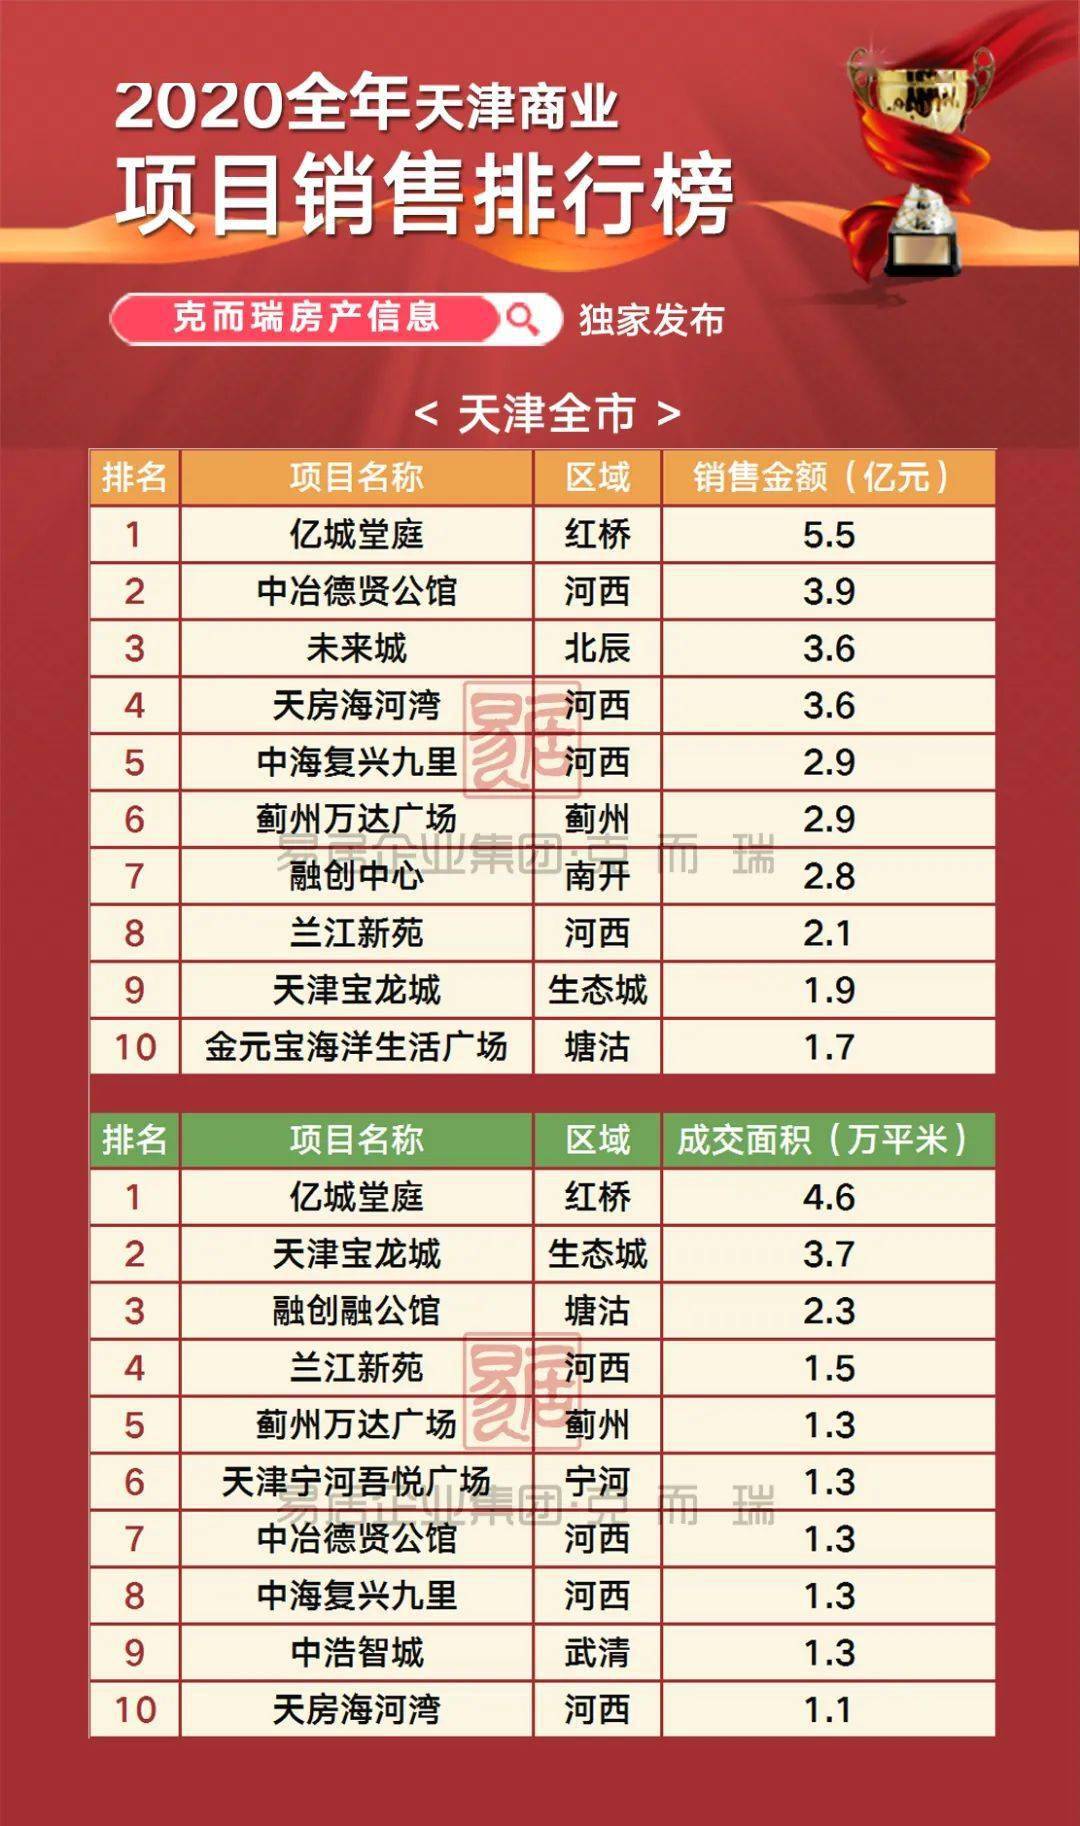 
2020年度天津商业项目销售排行榜|新京葡萄最新官网有限公司(图2)